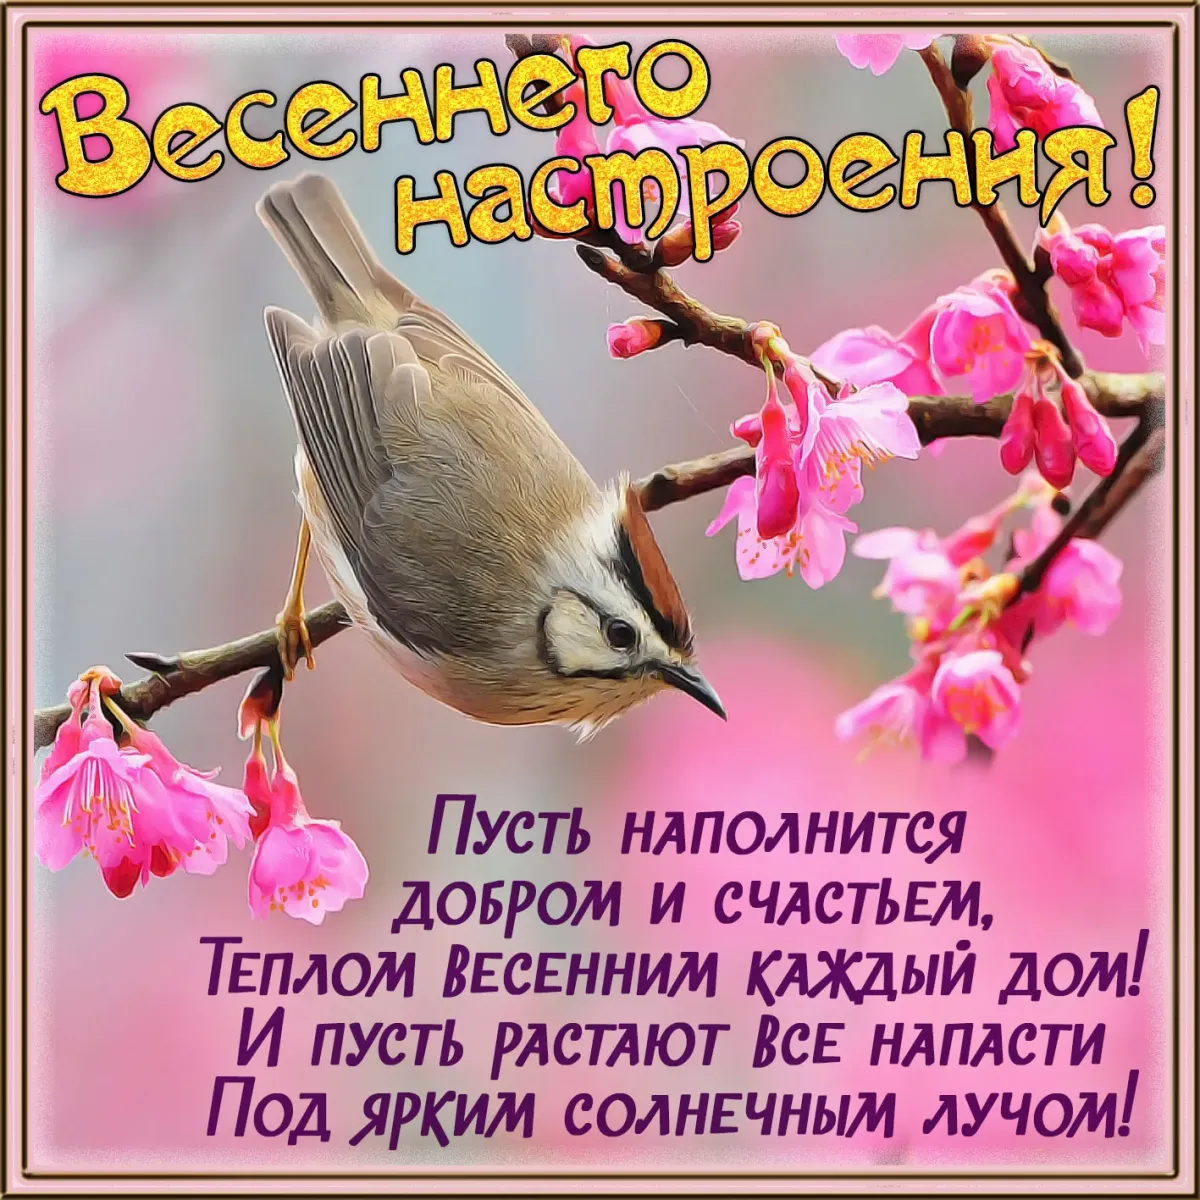 Доброе утро с пожеланиями здоровья весной. Поздравление с добрым весенним утром. Весенние пожелания. Пожелания с добрым весенним утром. Поздравления с добрым утром весны.